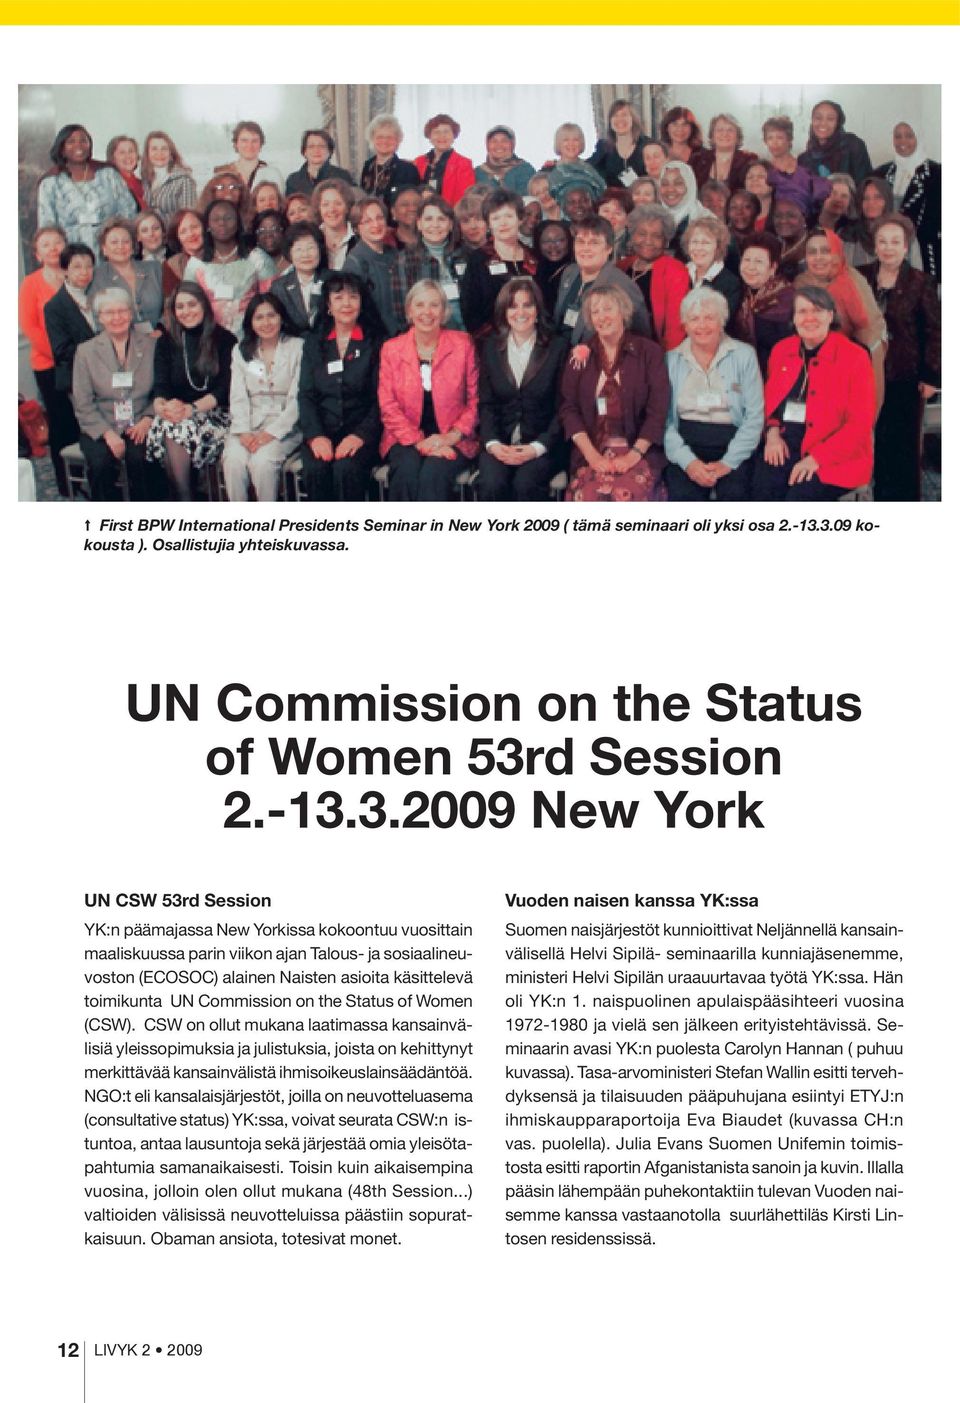 parin viikon ajan Talous- ja sosiaalineuvoston (ECOSOC) alainen Naisten asioita käsittelevä toimikunta UN Commission on the Status of Women (CSW).